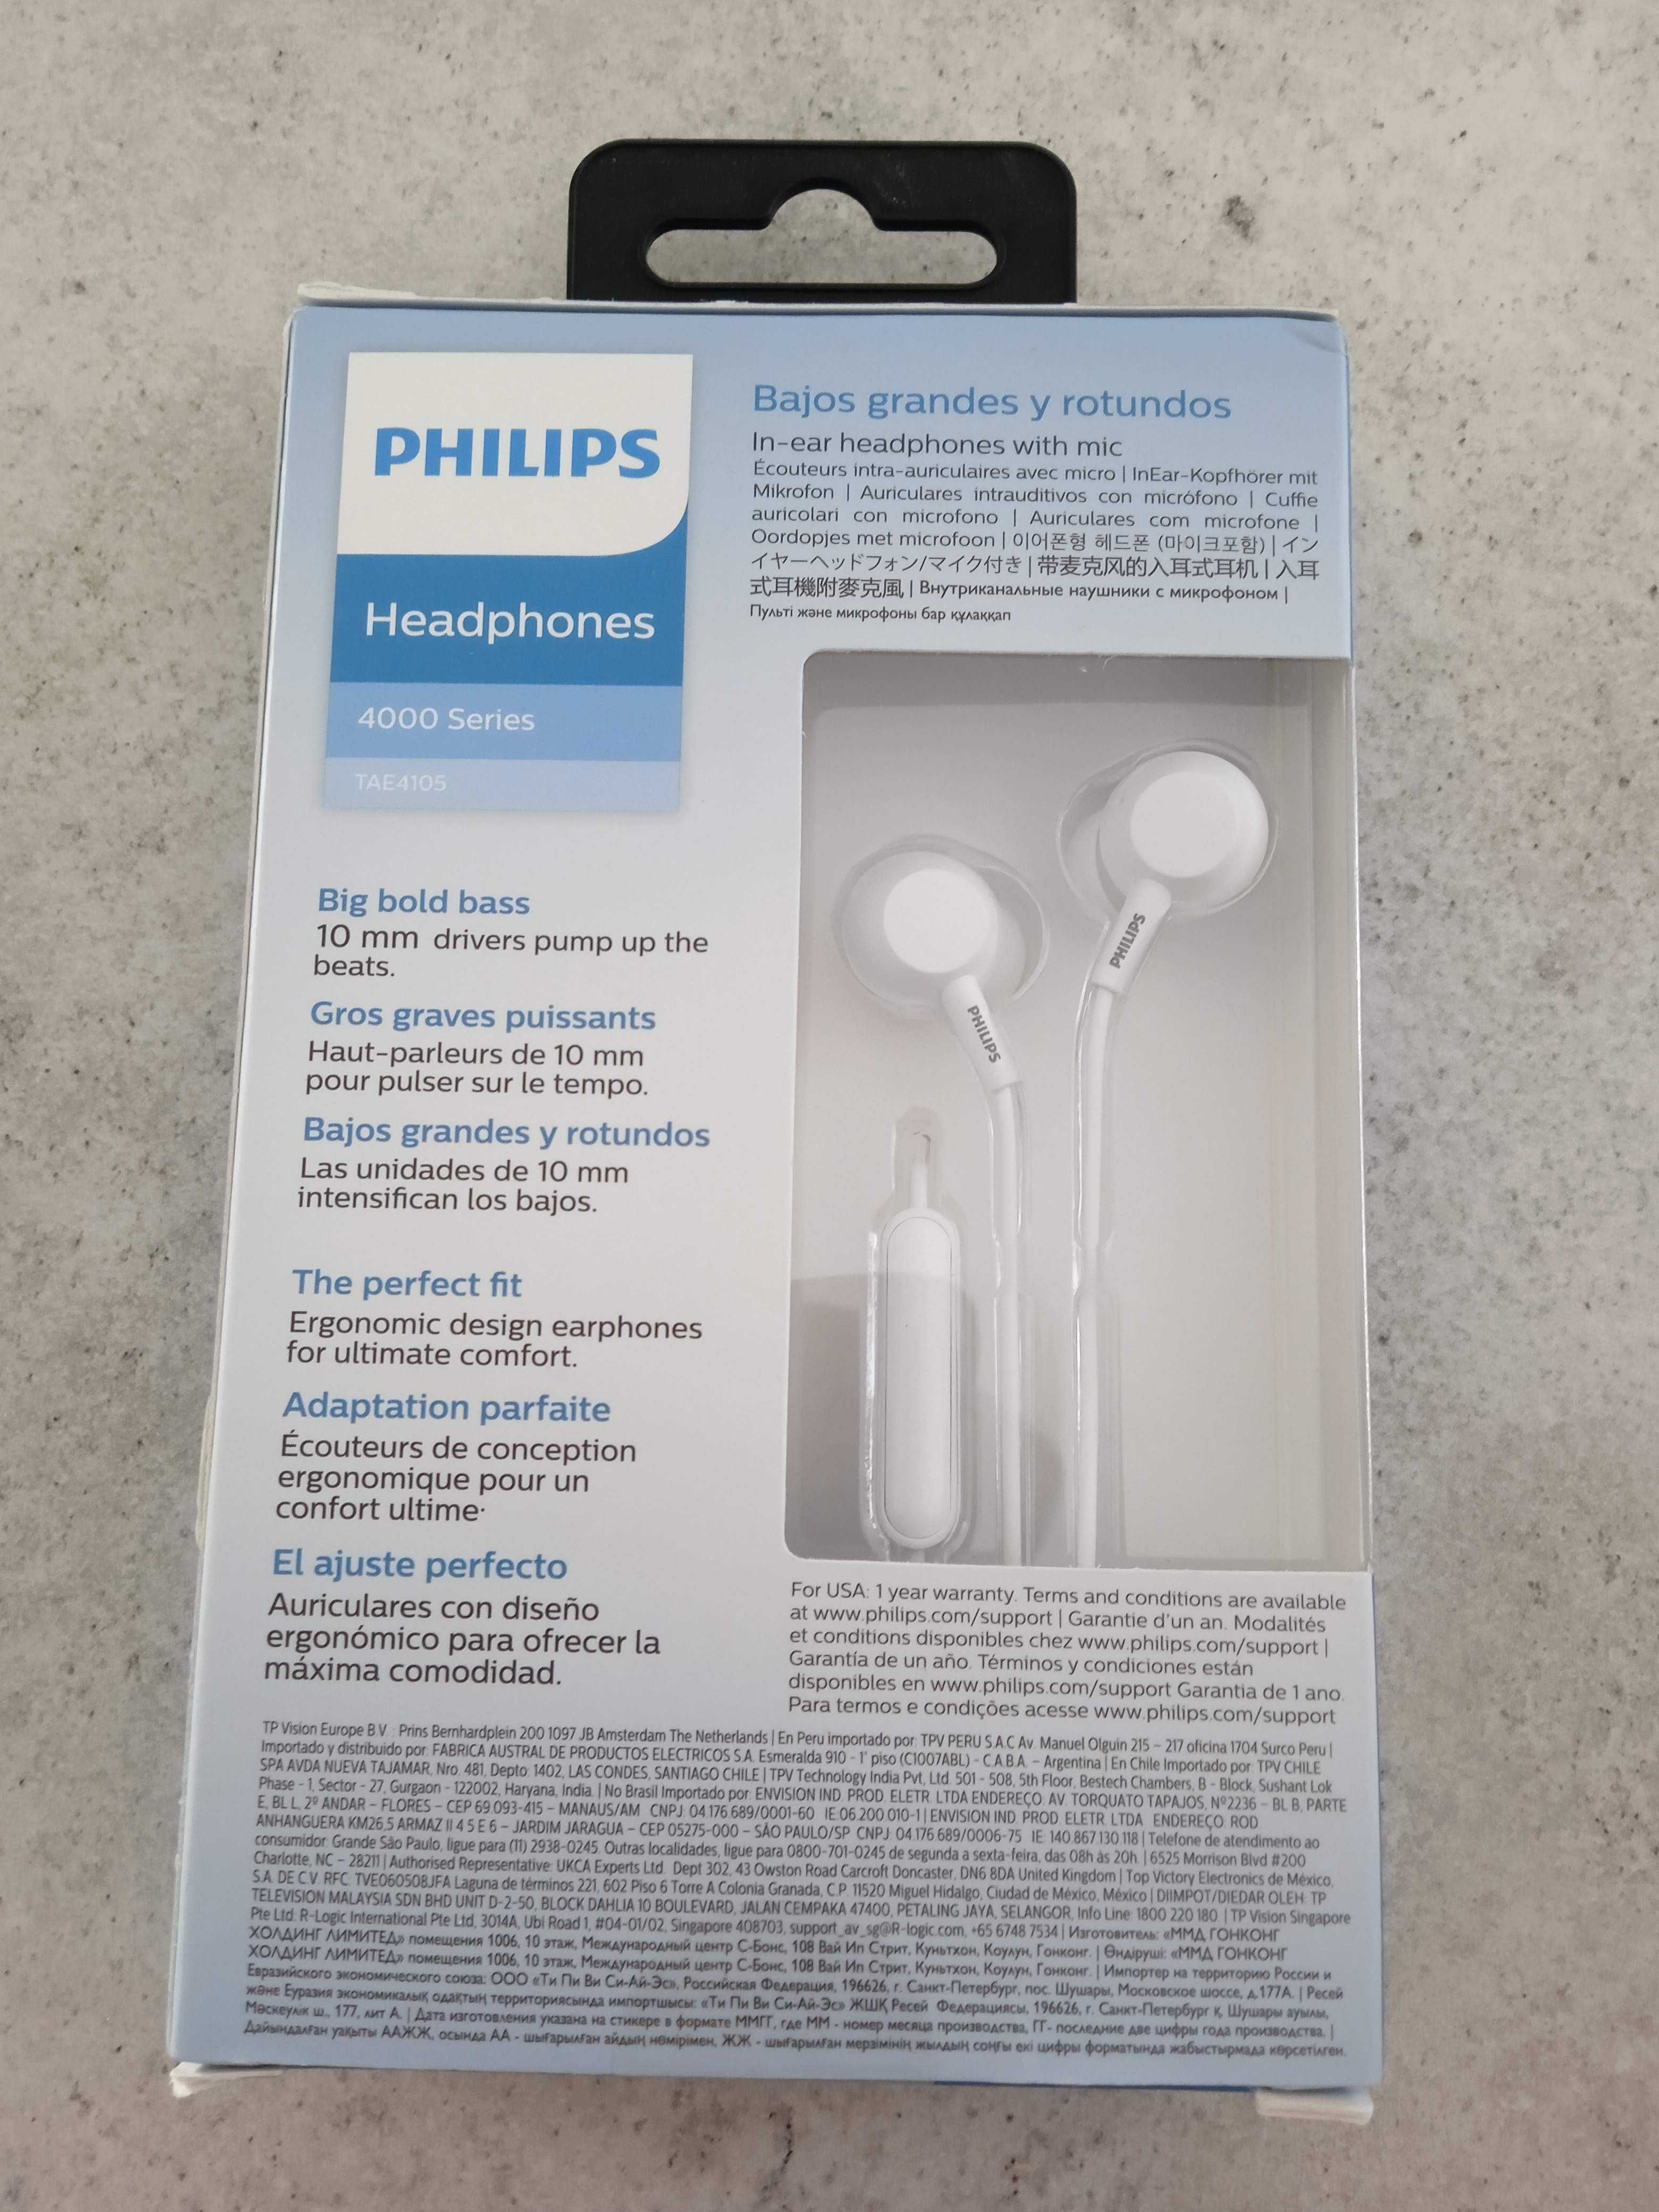 Słuchawki przewodowe douszne Philips TAE4105 białe nowe